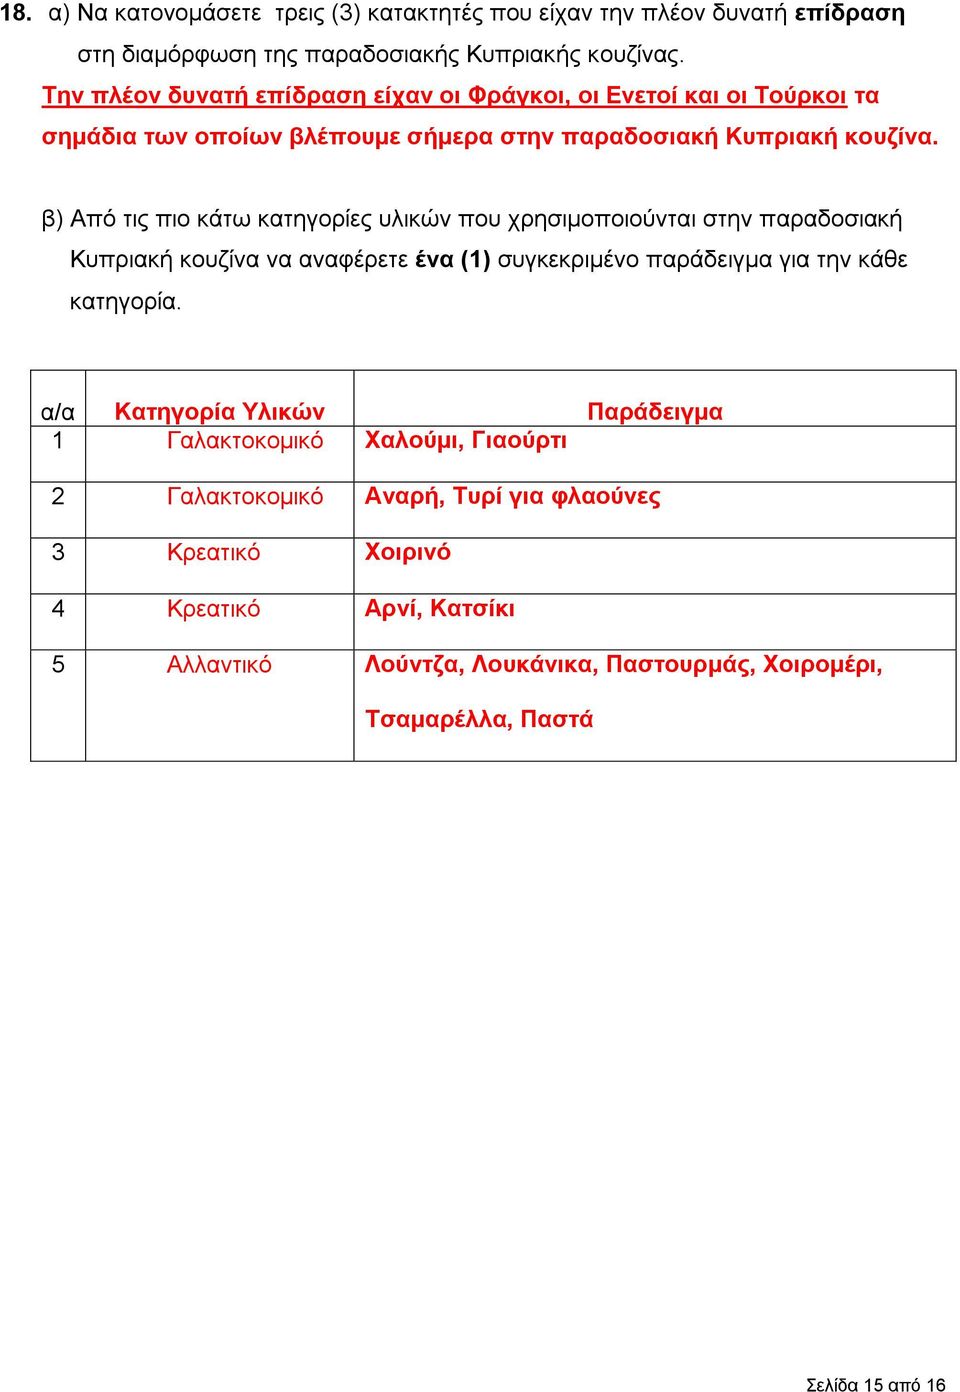 β) Από τις πιο κάτω κατηγορίες υλικών που χρησιμοποιούνται στην παραδοσιακή Κυπριακή κουζίνα να αναφέρετε ένα (1) συγκεκριμένο παράδειγμα για την κάθε κατηγορία.